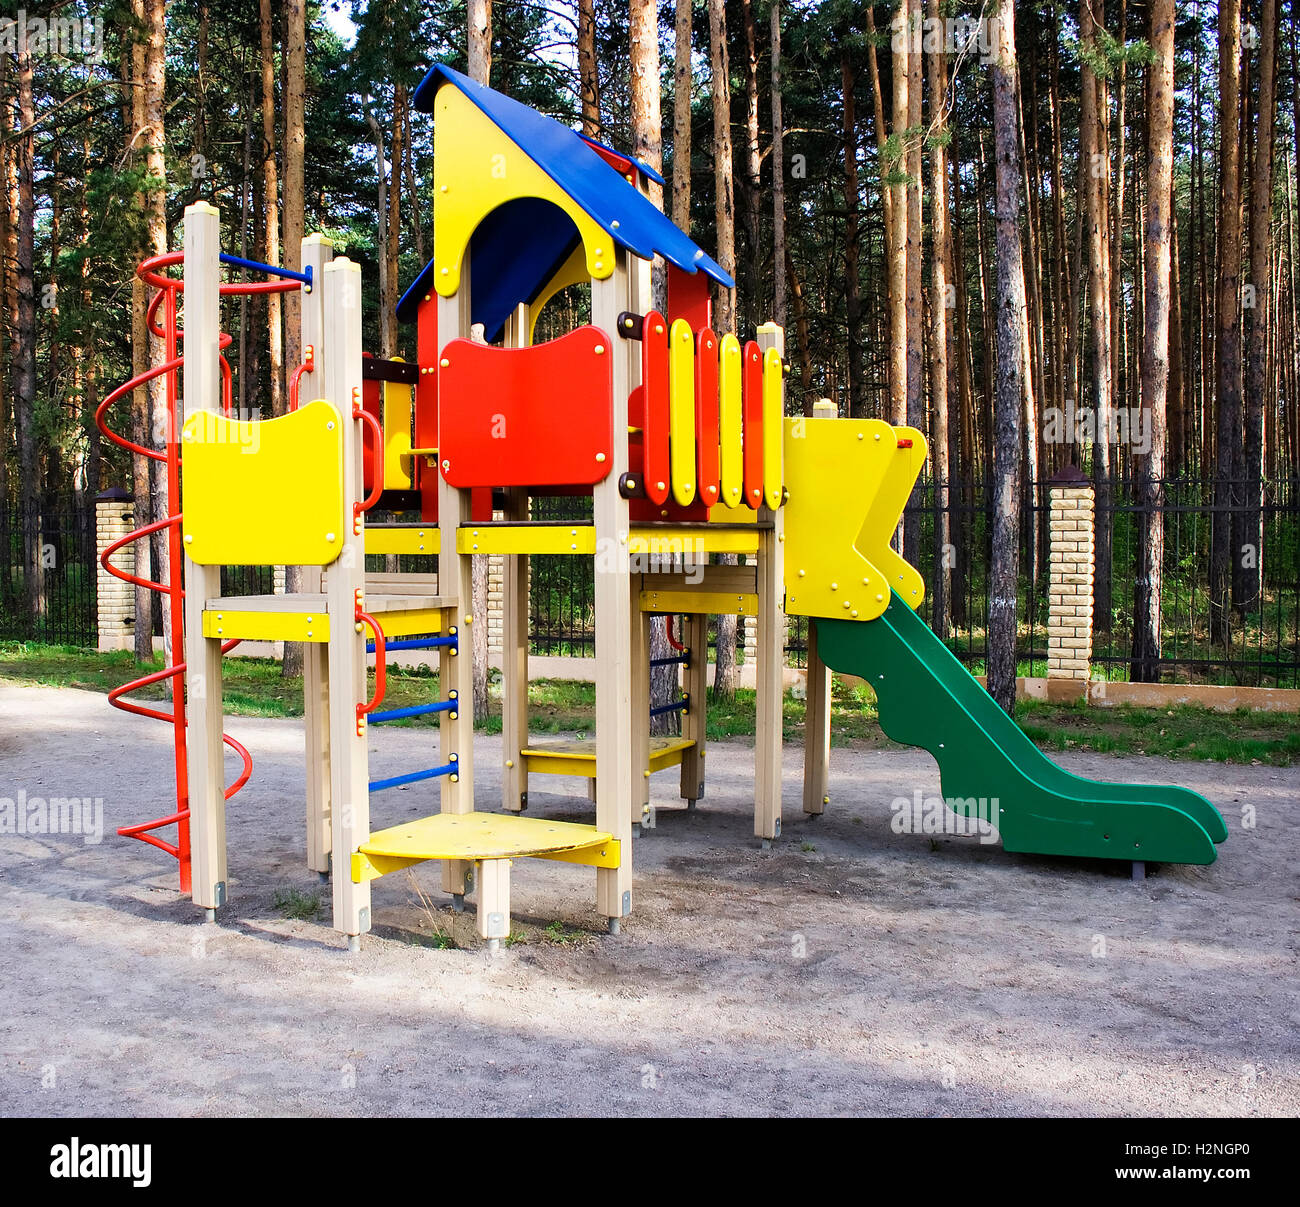 Il parco giochi per i bambini o playset in un cortile della zona residenziale collocato in una pineta con alberi o a un parco. Foto Stock